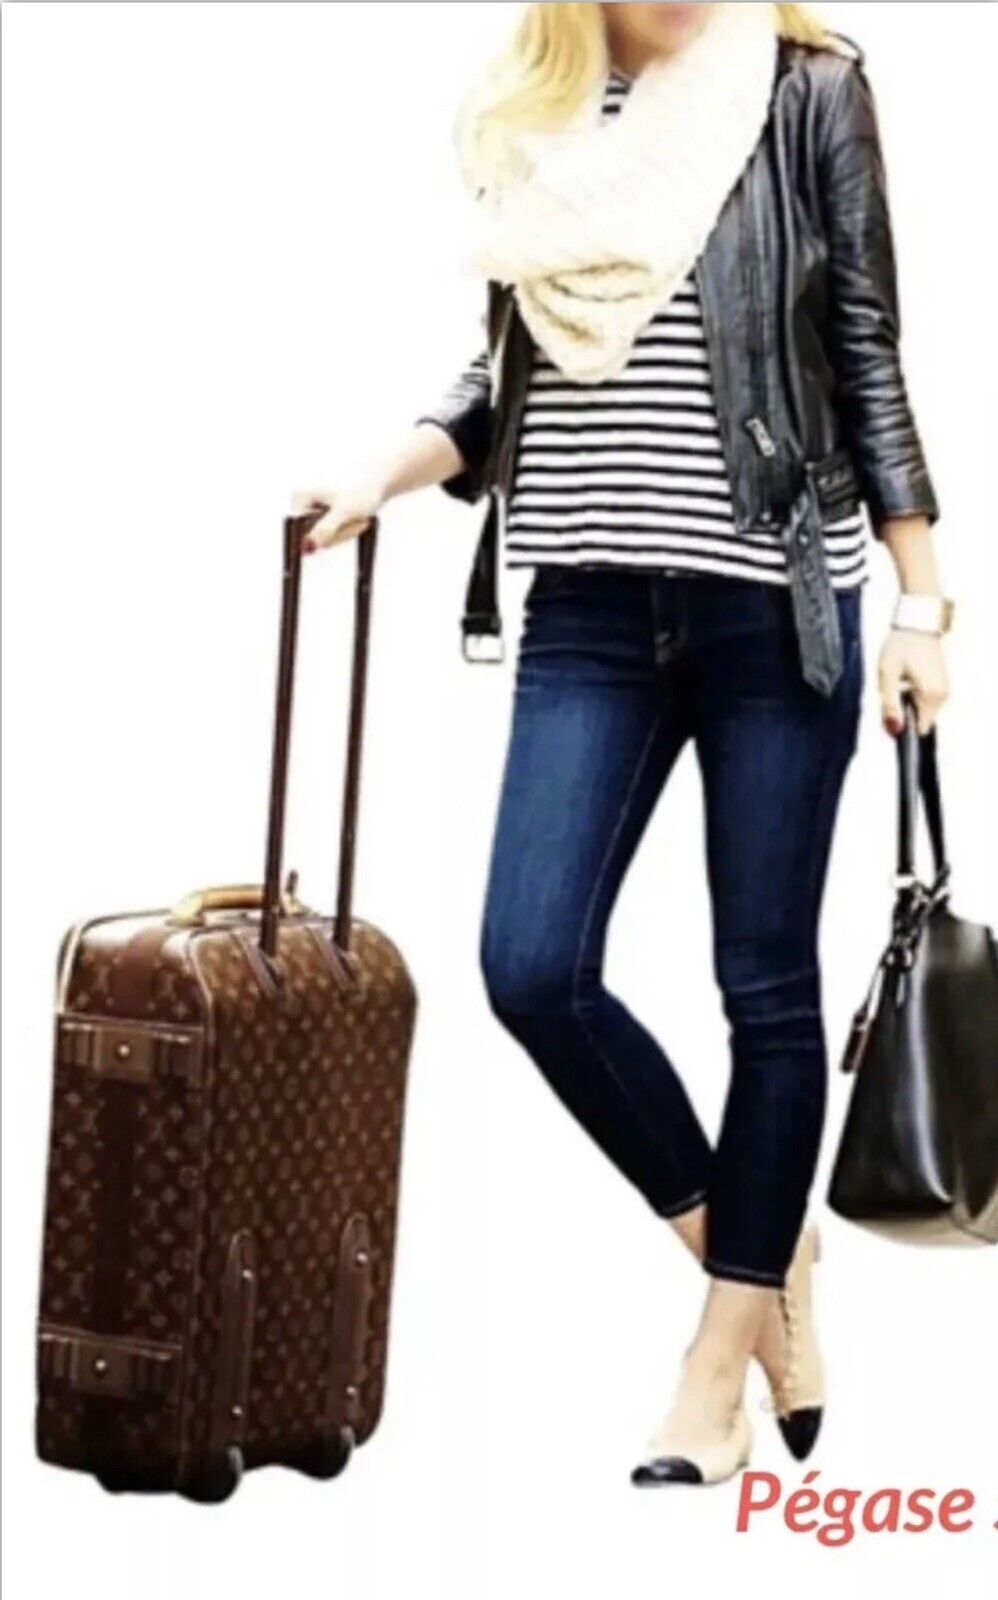 Louis Vuitton Pegase Rolling Carry-on Suitcase Bag w/ Dustbag+Garment